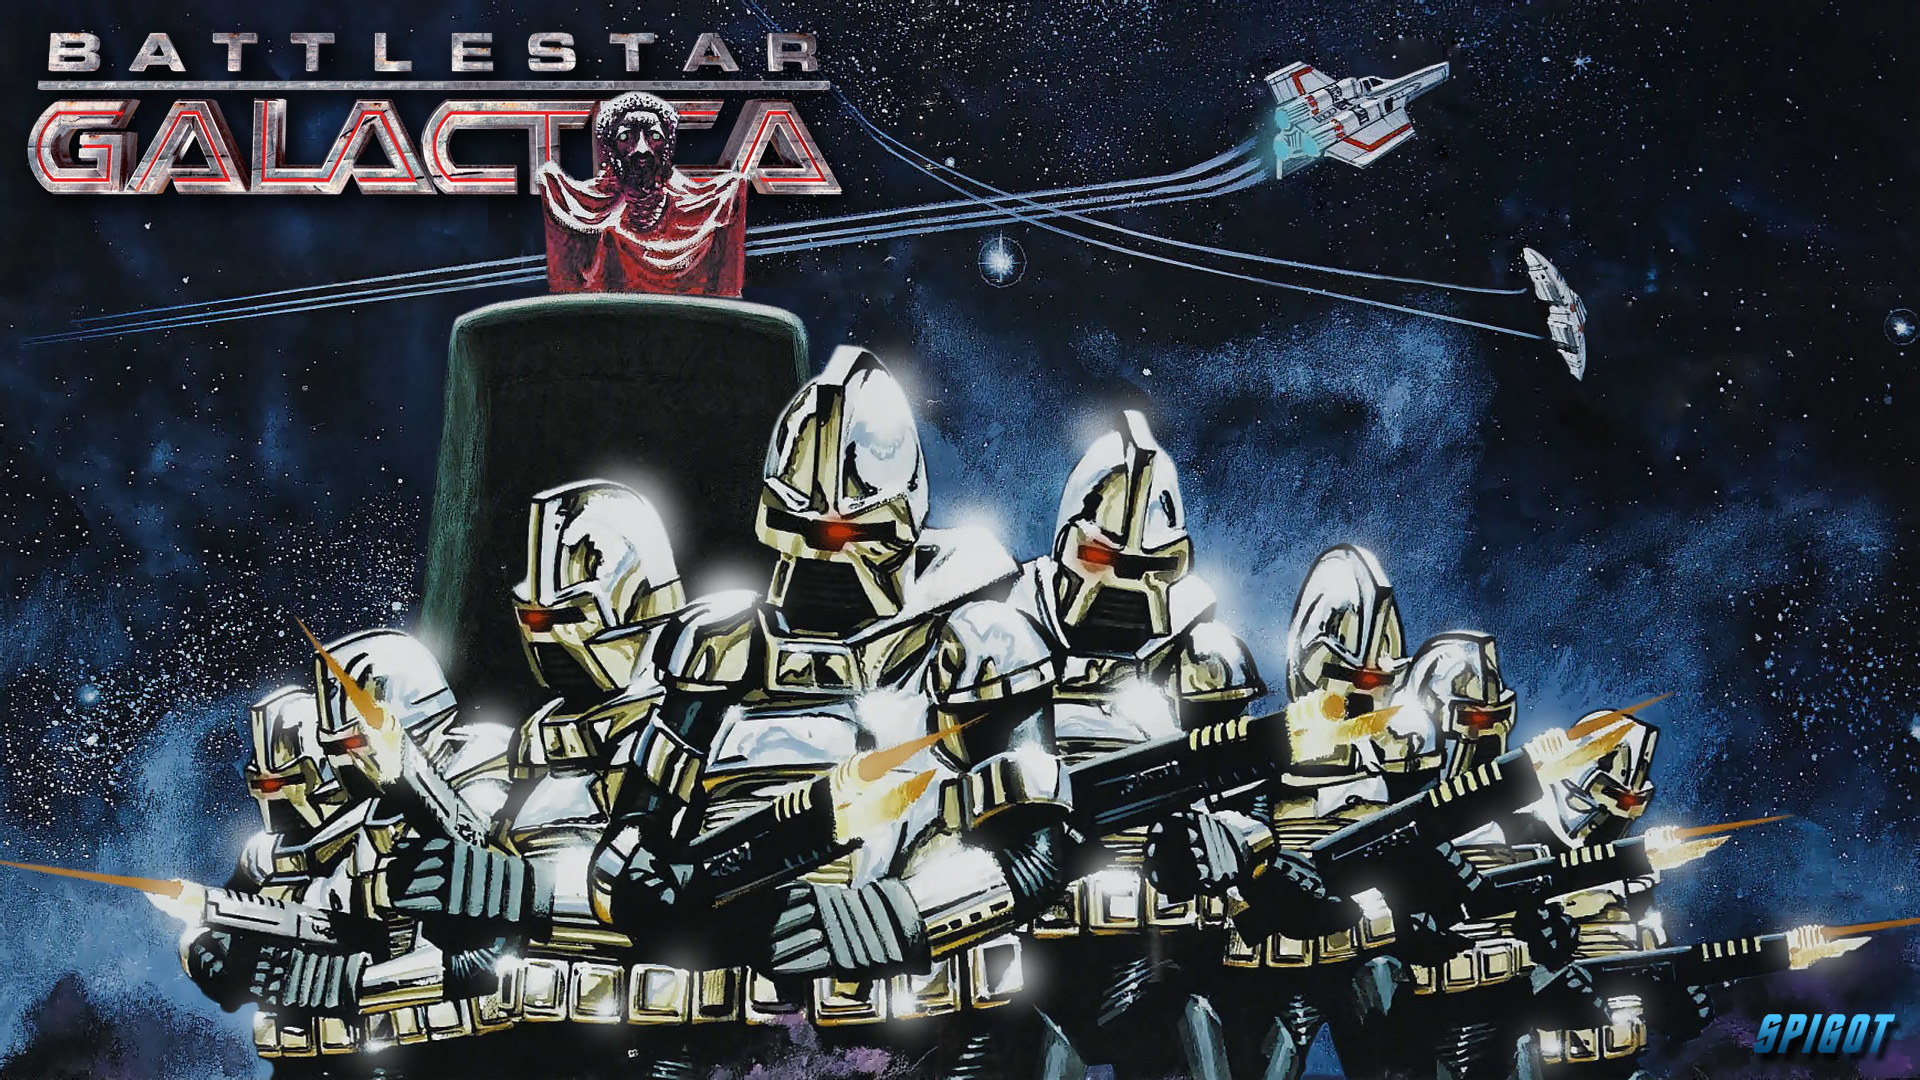 Classic Battlestar Galactica Wallpaper - Battlestar Galactica The Cylon Attack , HD Wallpaper & Backgrounds